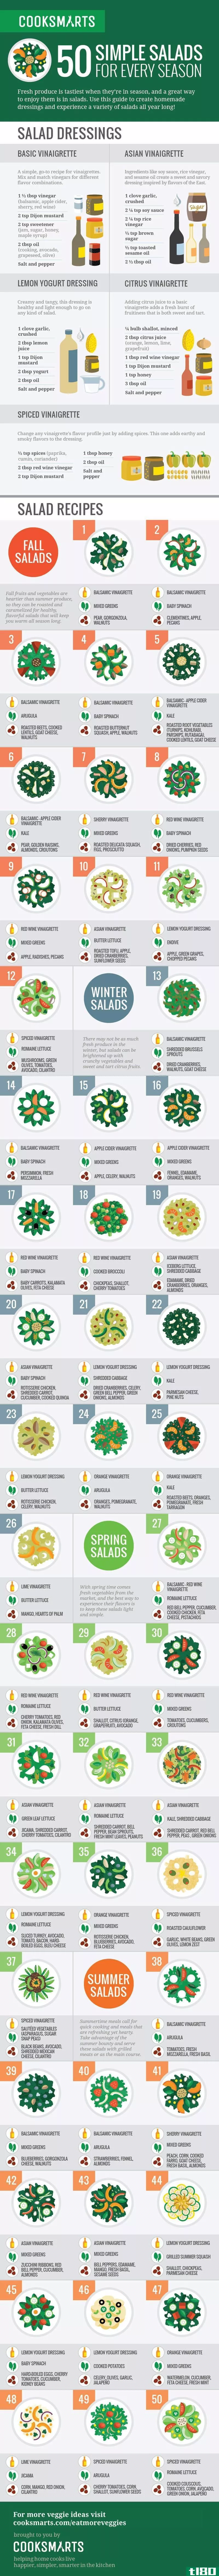 这张信息图展示了50种全年都可以享用的沙拉创意